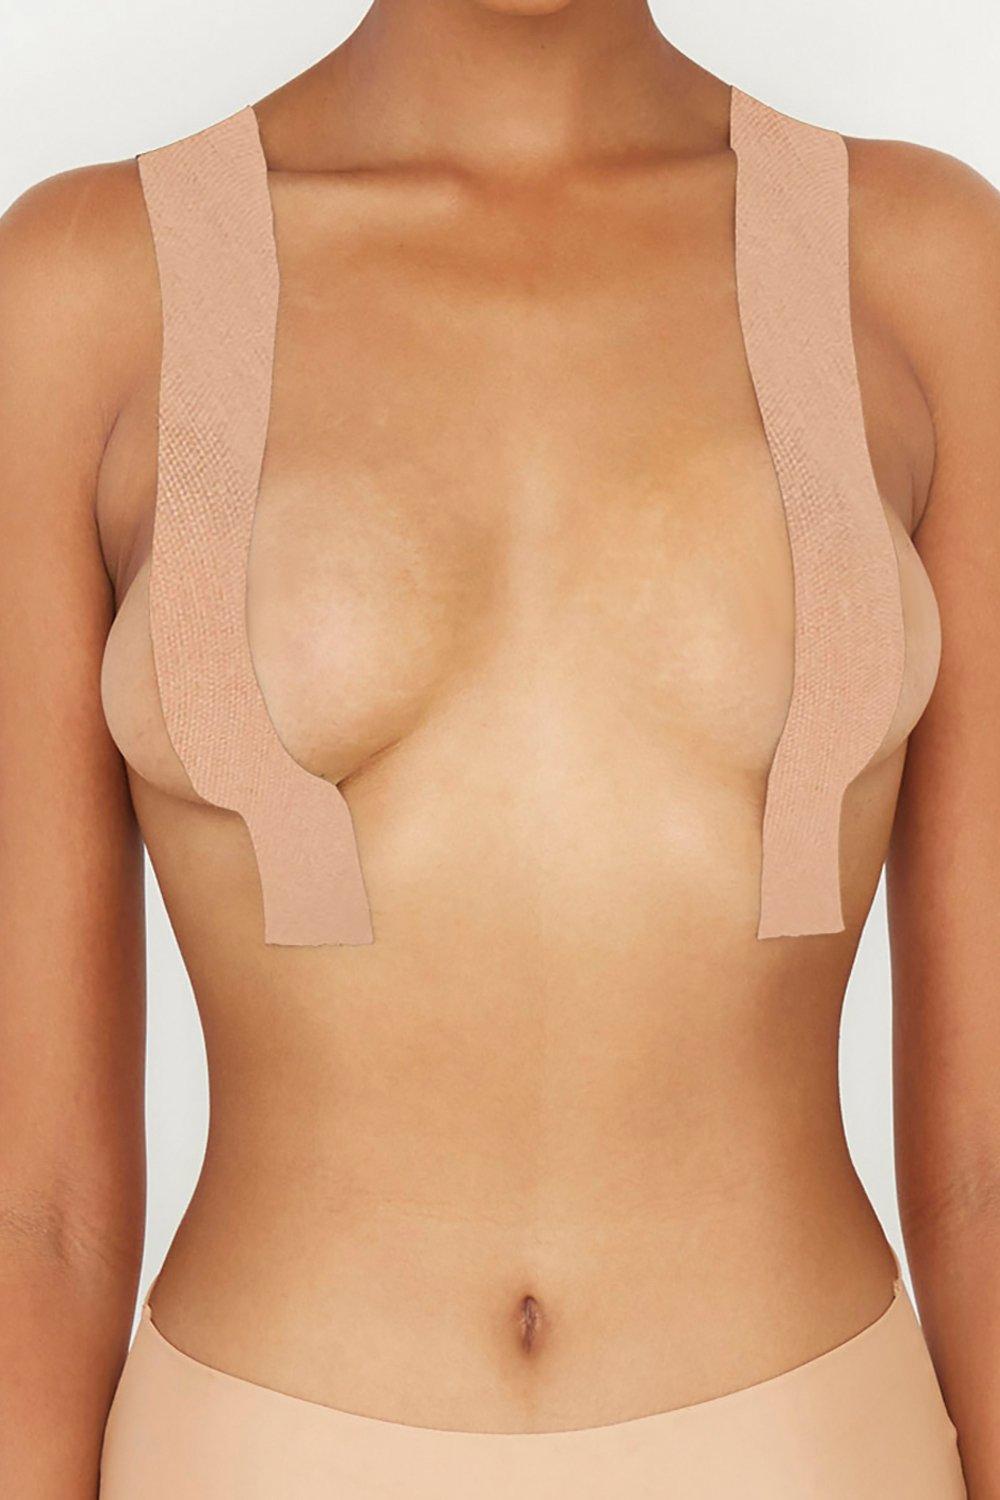 Womens Perky Pear Diy Breast Lift Tape - beige - ONE SIZE, Beige